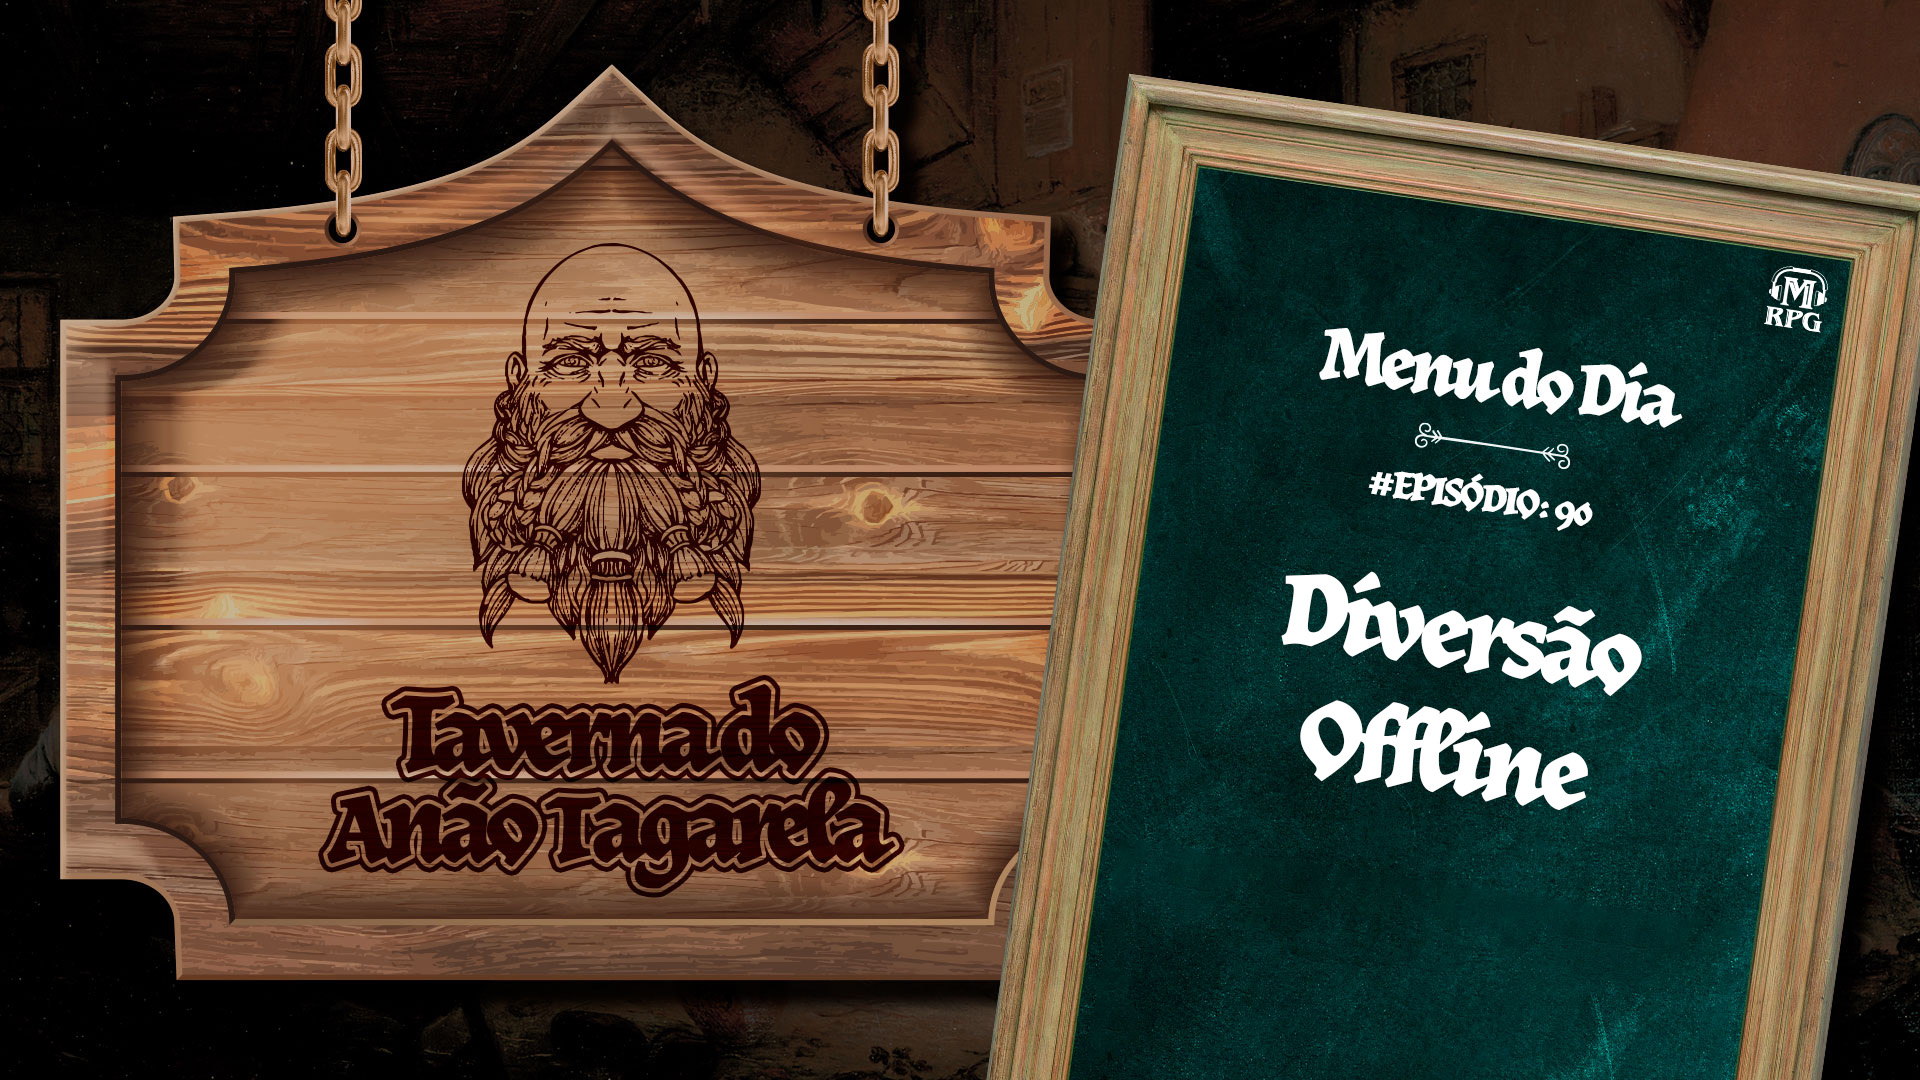 Diversão Offline – Taverna do Anão Tagarela #90